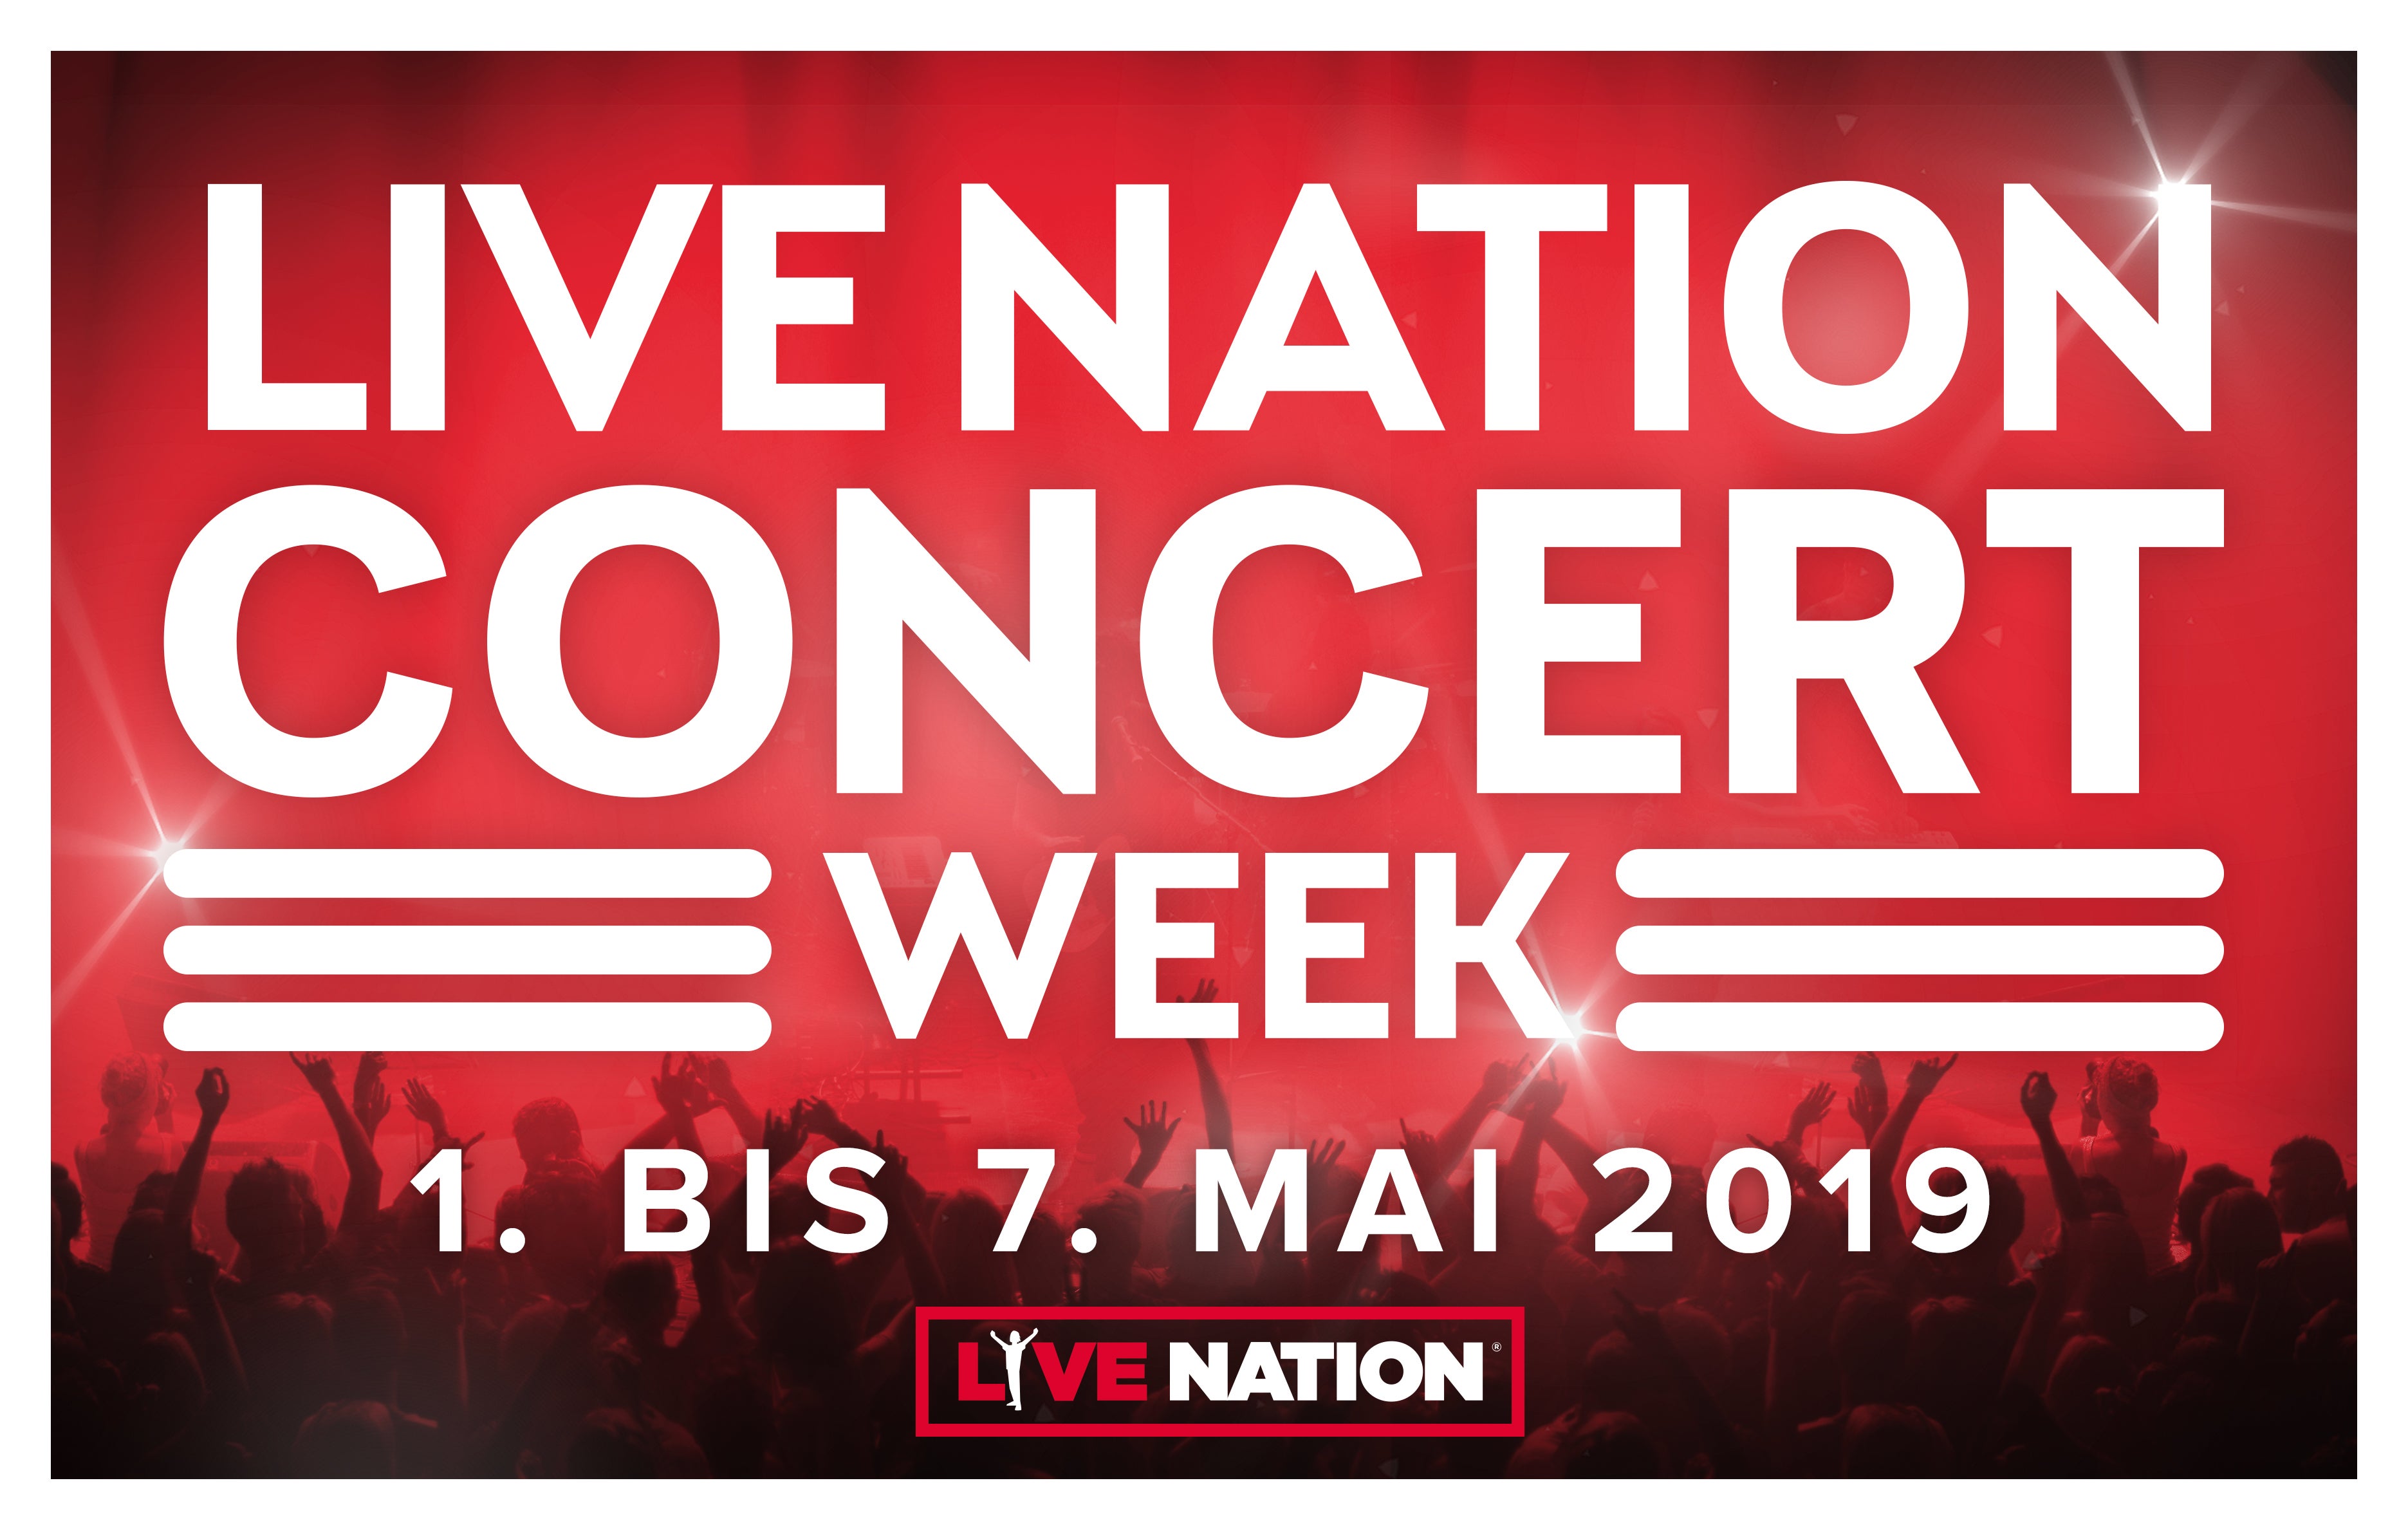 Live Nation Concert Week 2019